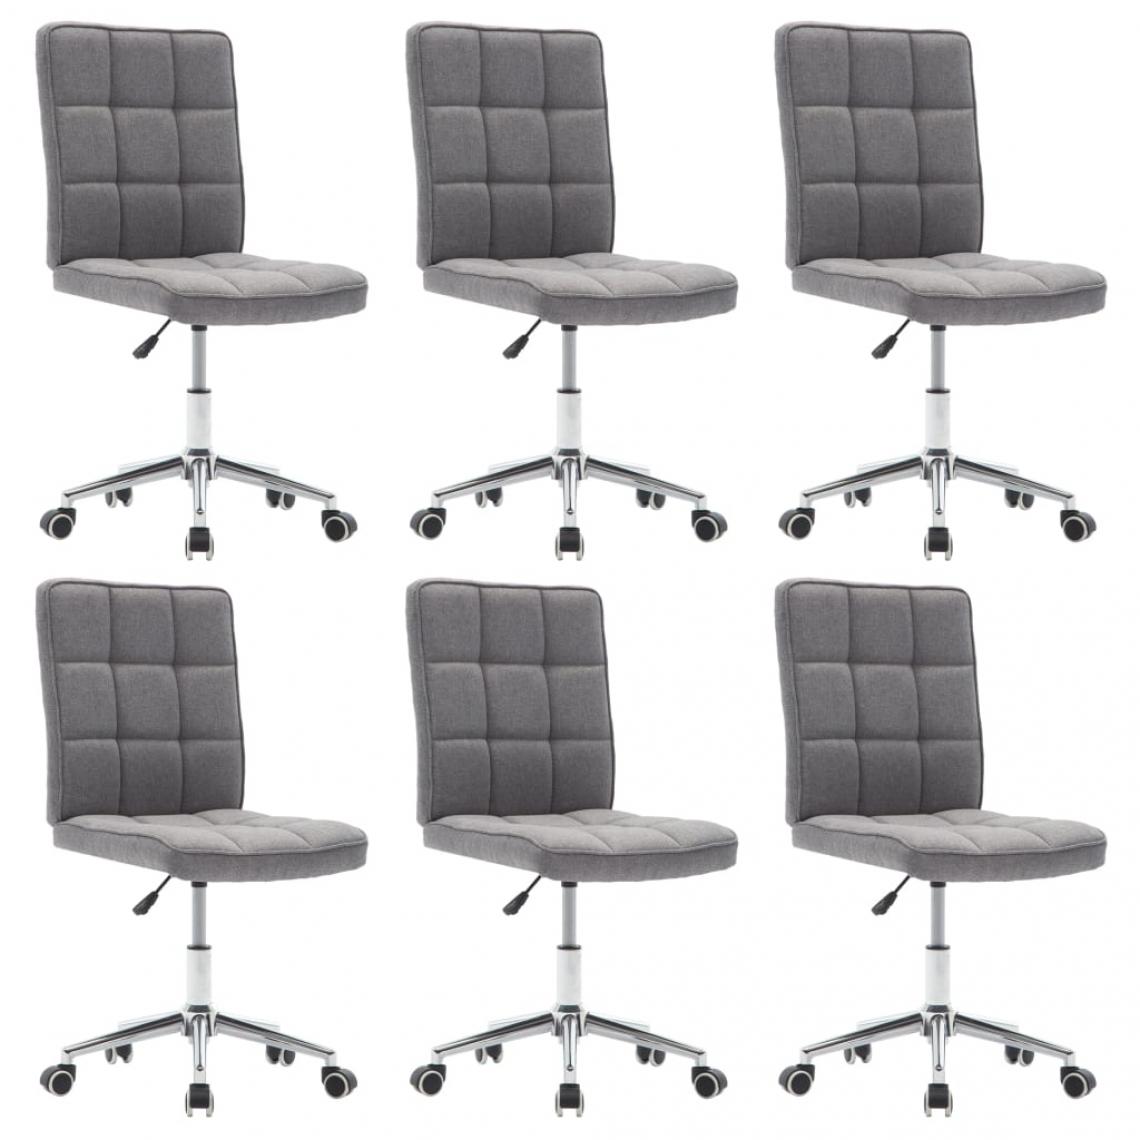 Decoshop26 - Lot de 6 chaises de salle à manger cuisine design moderne tissu gris clair CDS022410 - Chaises